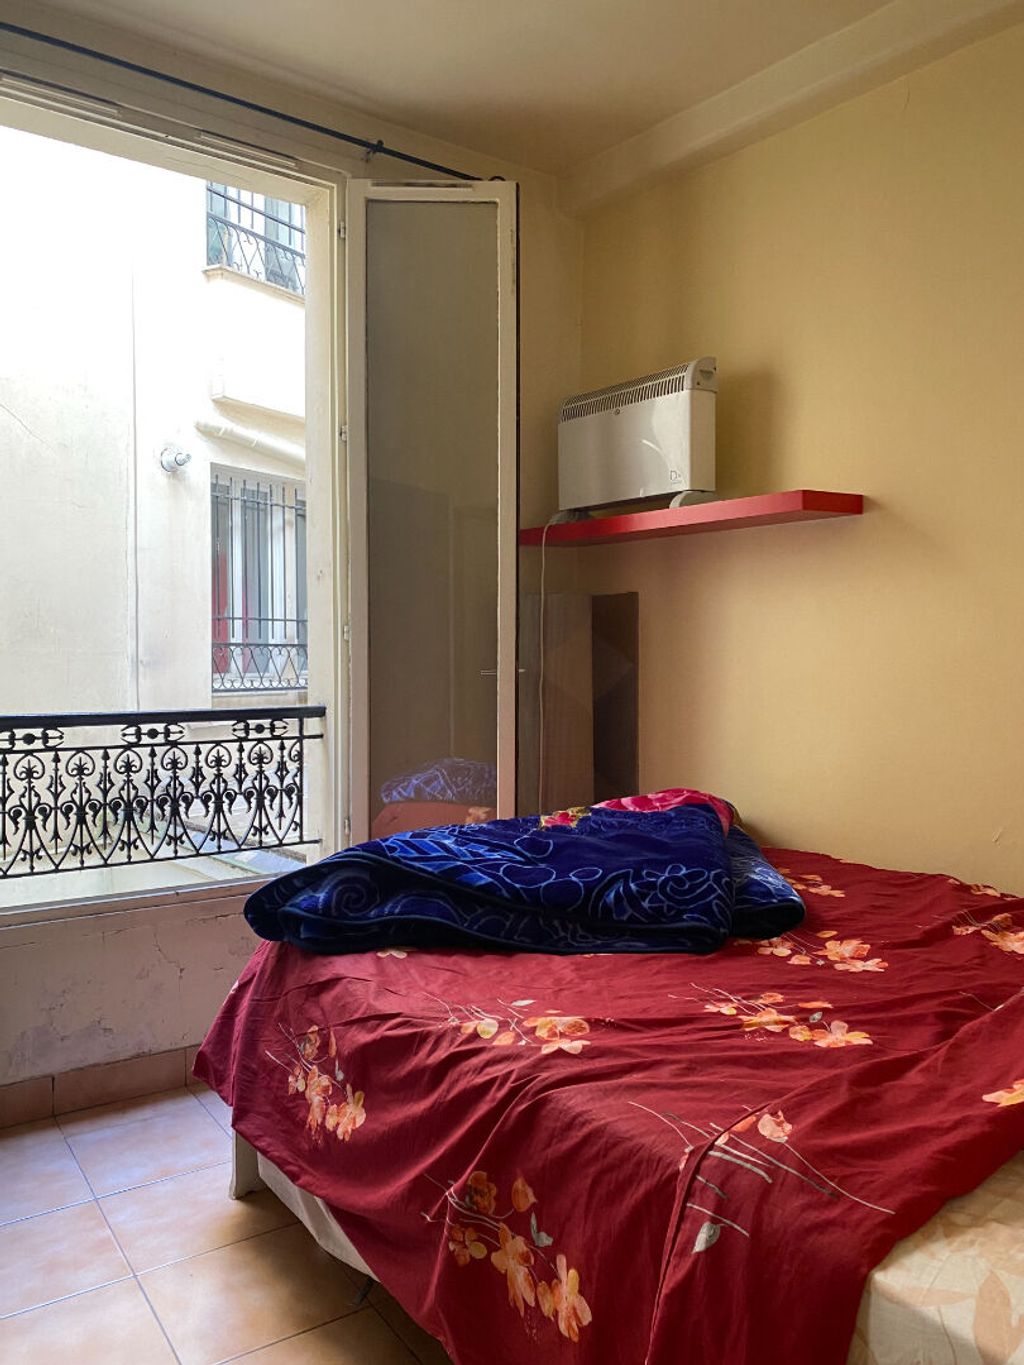 Achat appartement 2 pièce(s) Levallois-Perret